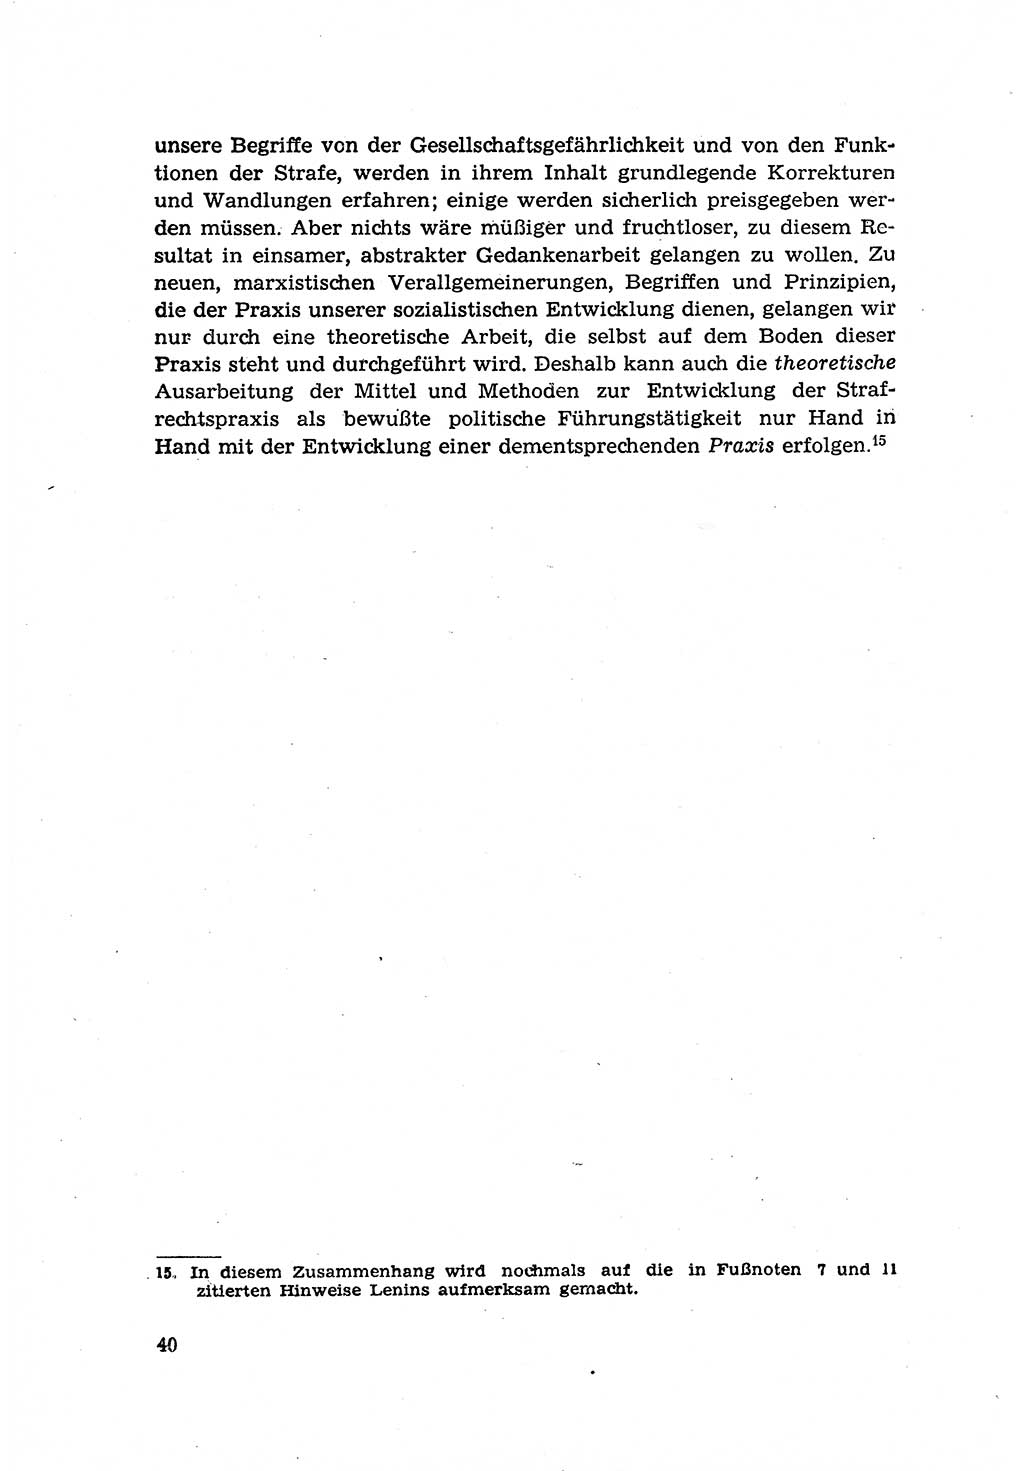 Zur Entwicklung des sozialistischen Strafrechts der Deutschen Demokratischen Republik (DDR) 1960, Seite 40 (Entw. soz. Strafr. DDR 1960, S. 40)